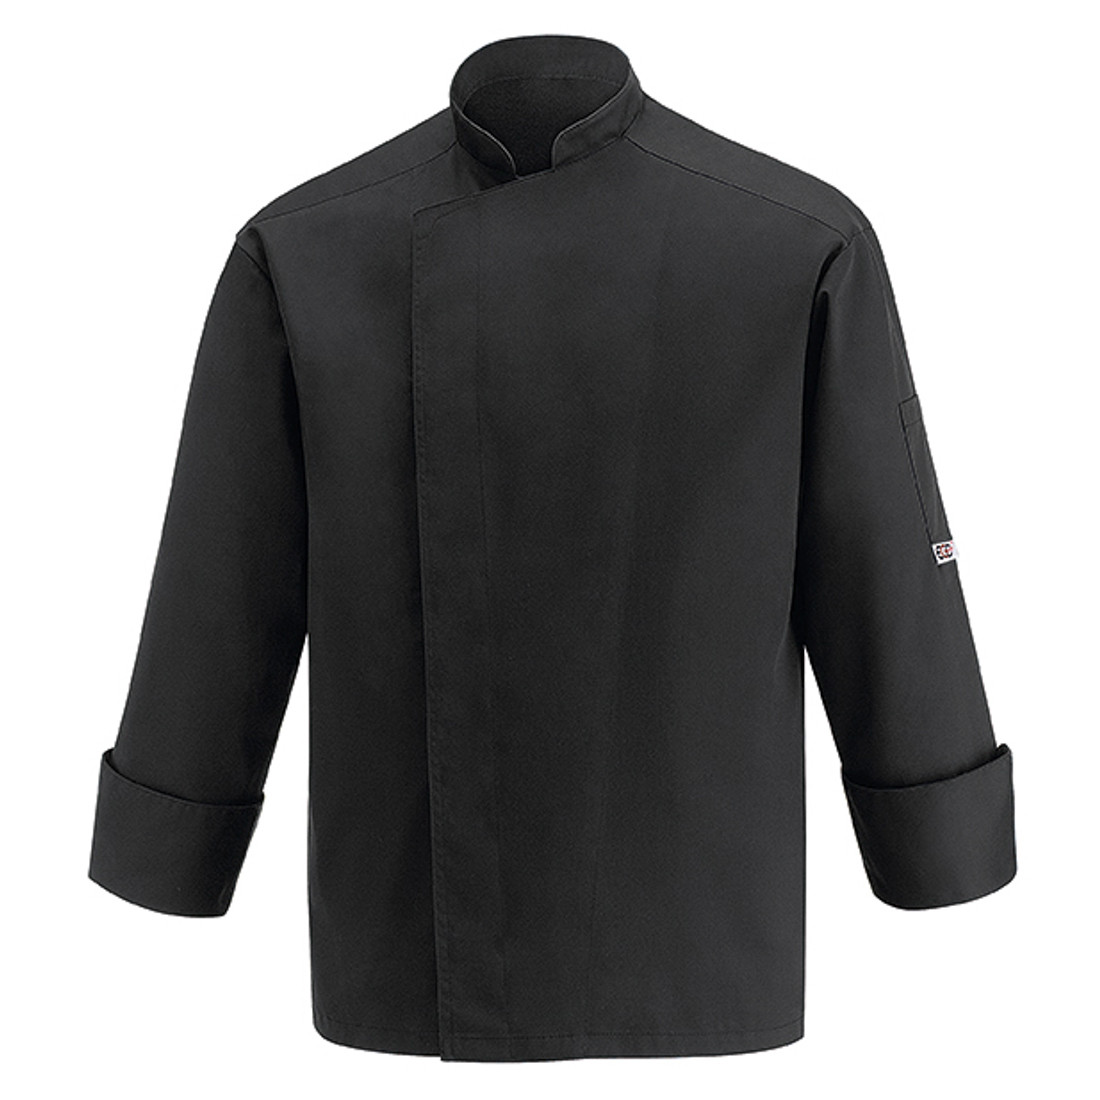 Veste chef All, 65% polyester/35% coton - Les vêtements de protection